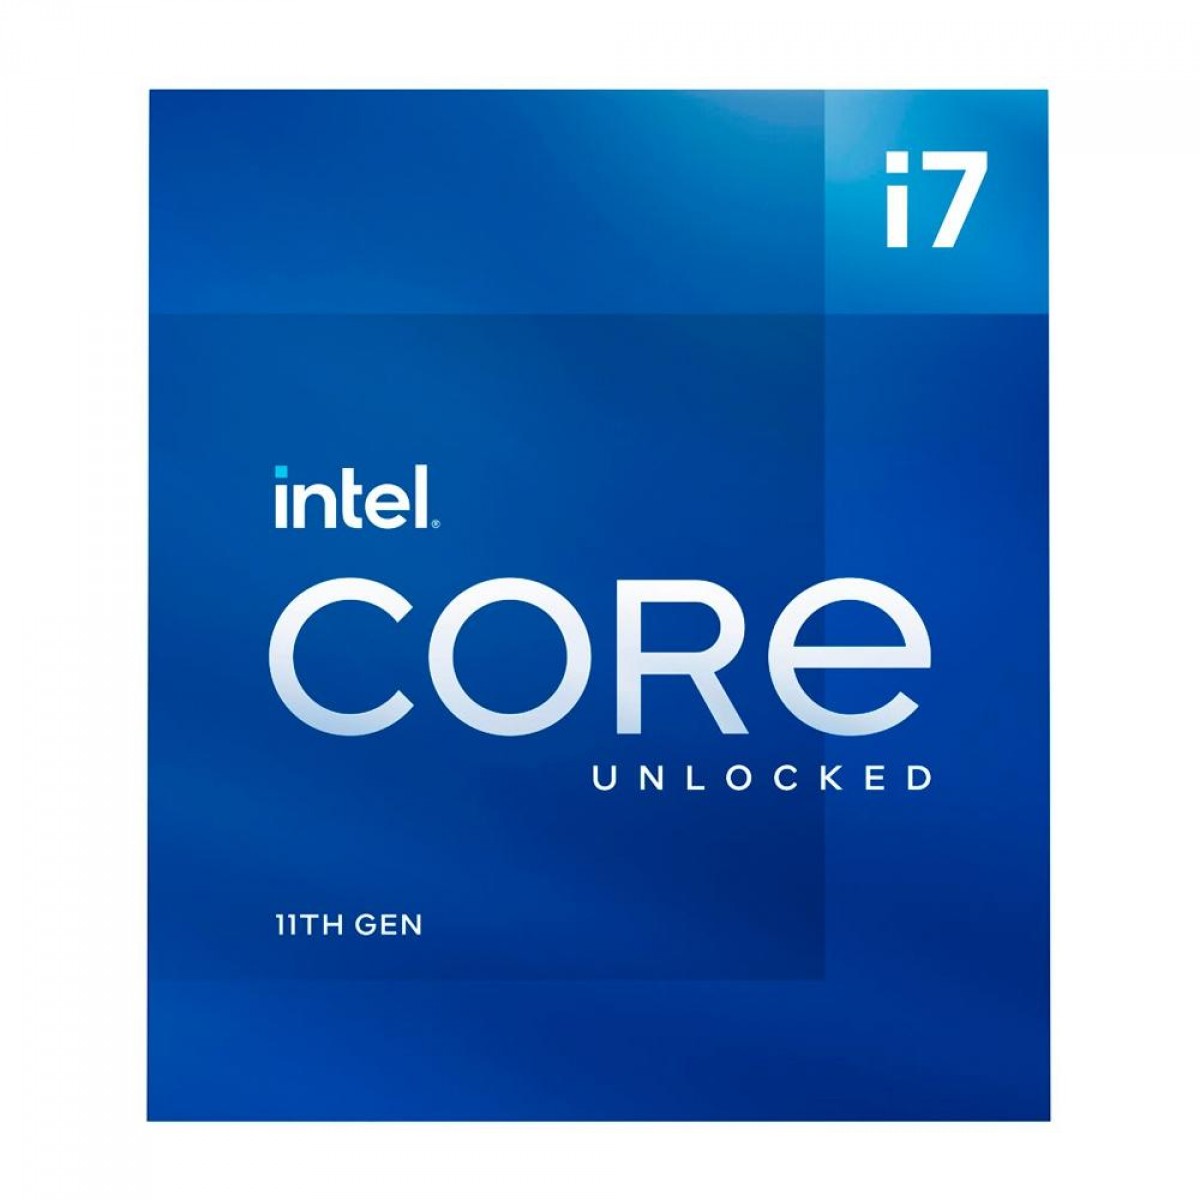 Processador Intel Core i7 11700K, 3.6GHz (5.0GHz Turbo), 11ª Geração, 8-Cores 16-Threads, LGA 1200, BX8070811700K